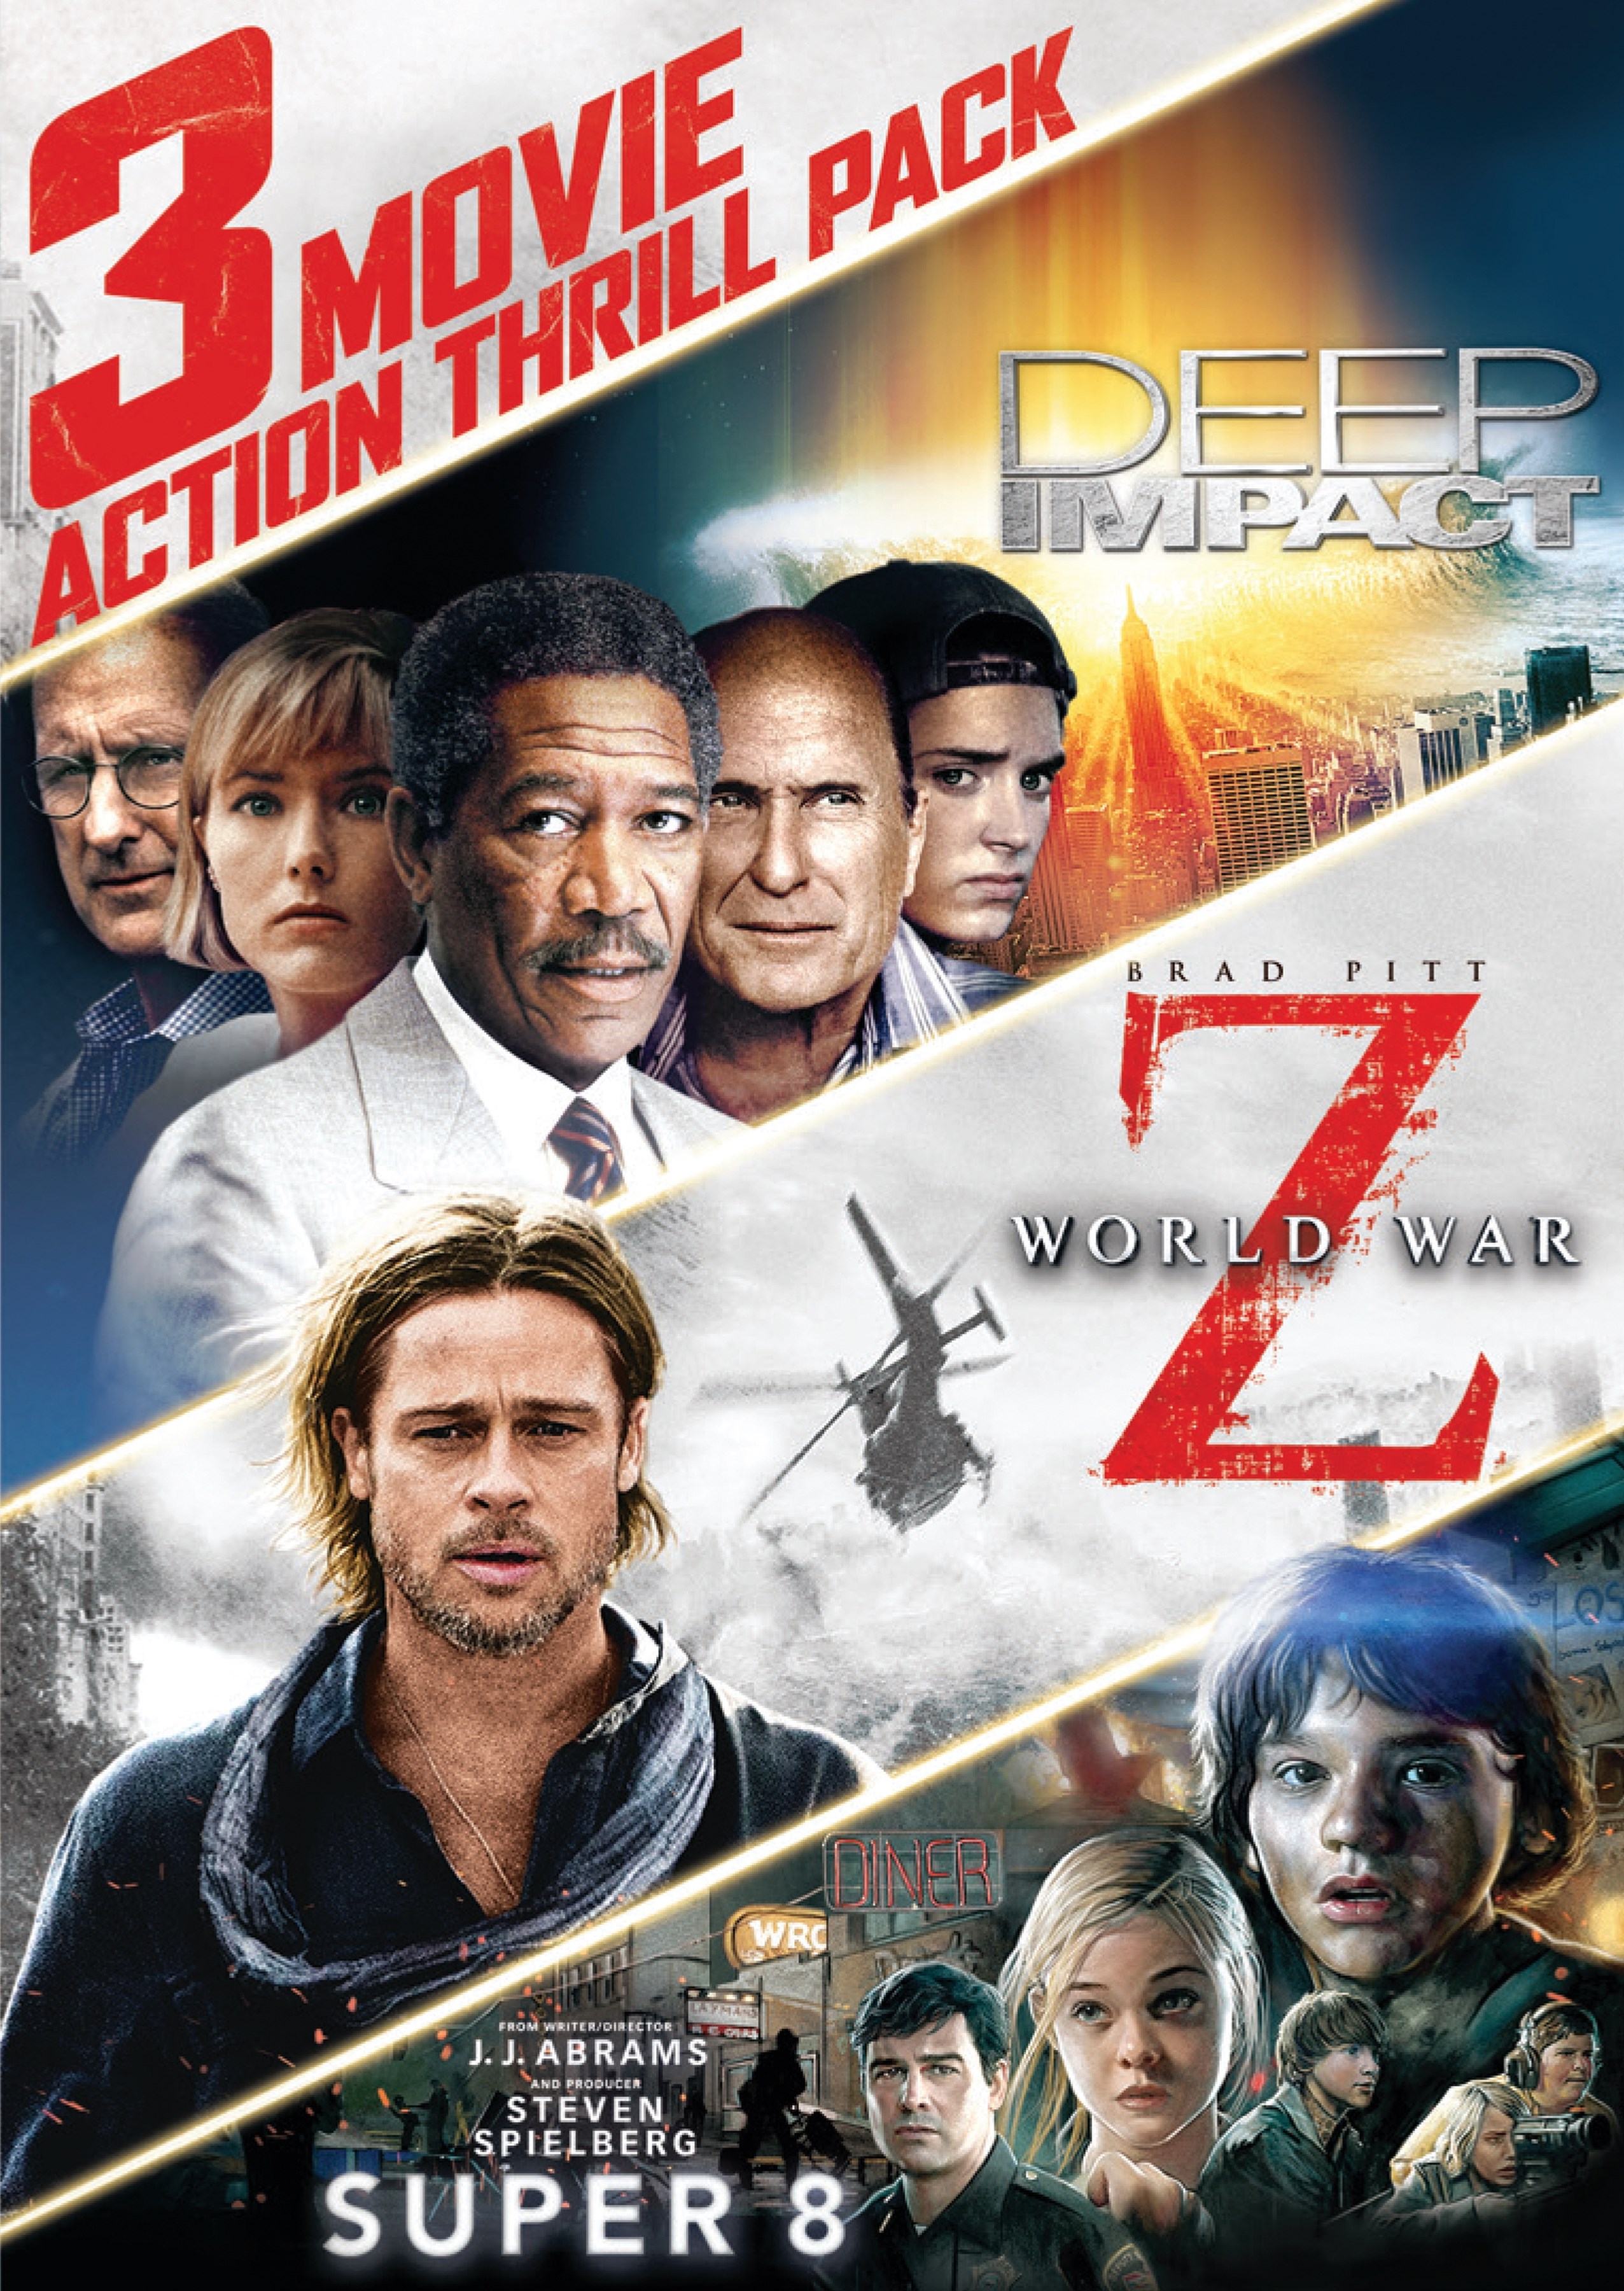 Vejfremstillingsproces rod Se internettet 3 Movie Action Thrill Pack: Deep Impact/World War Z/Super 8 [3 Discs] [DVD]  - Best Buy